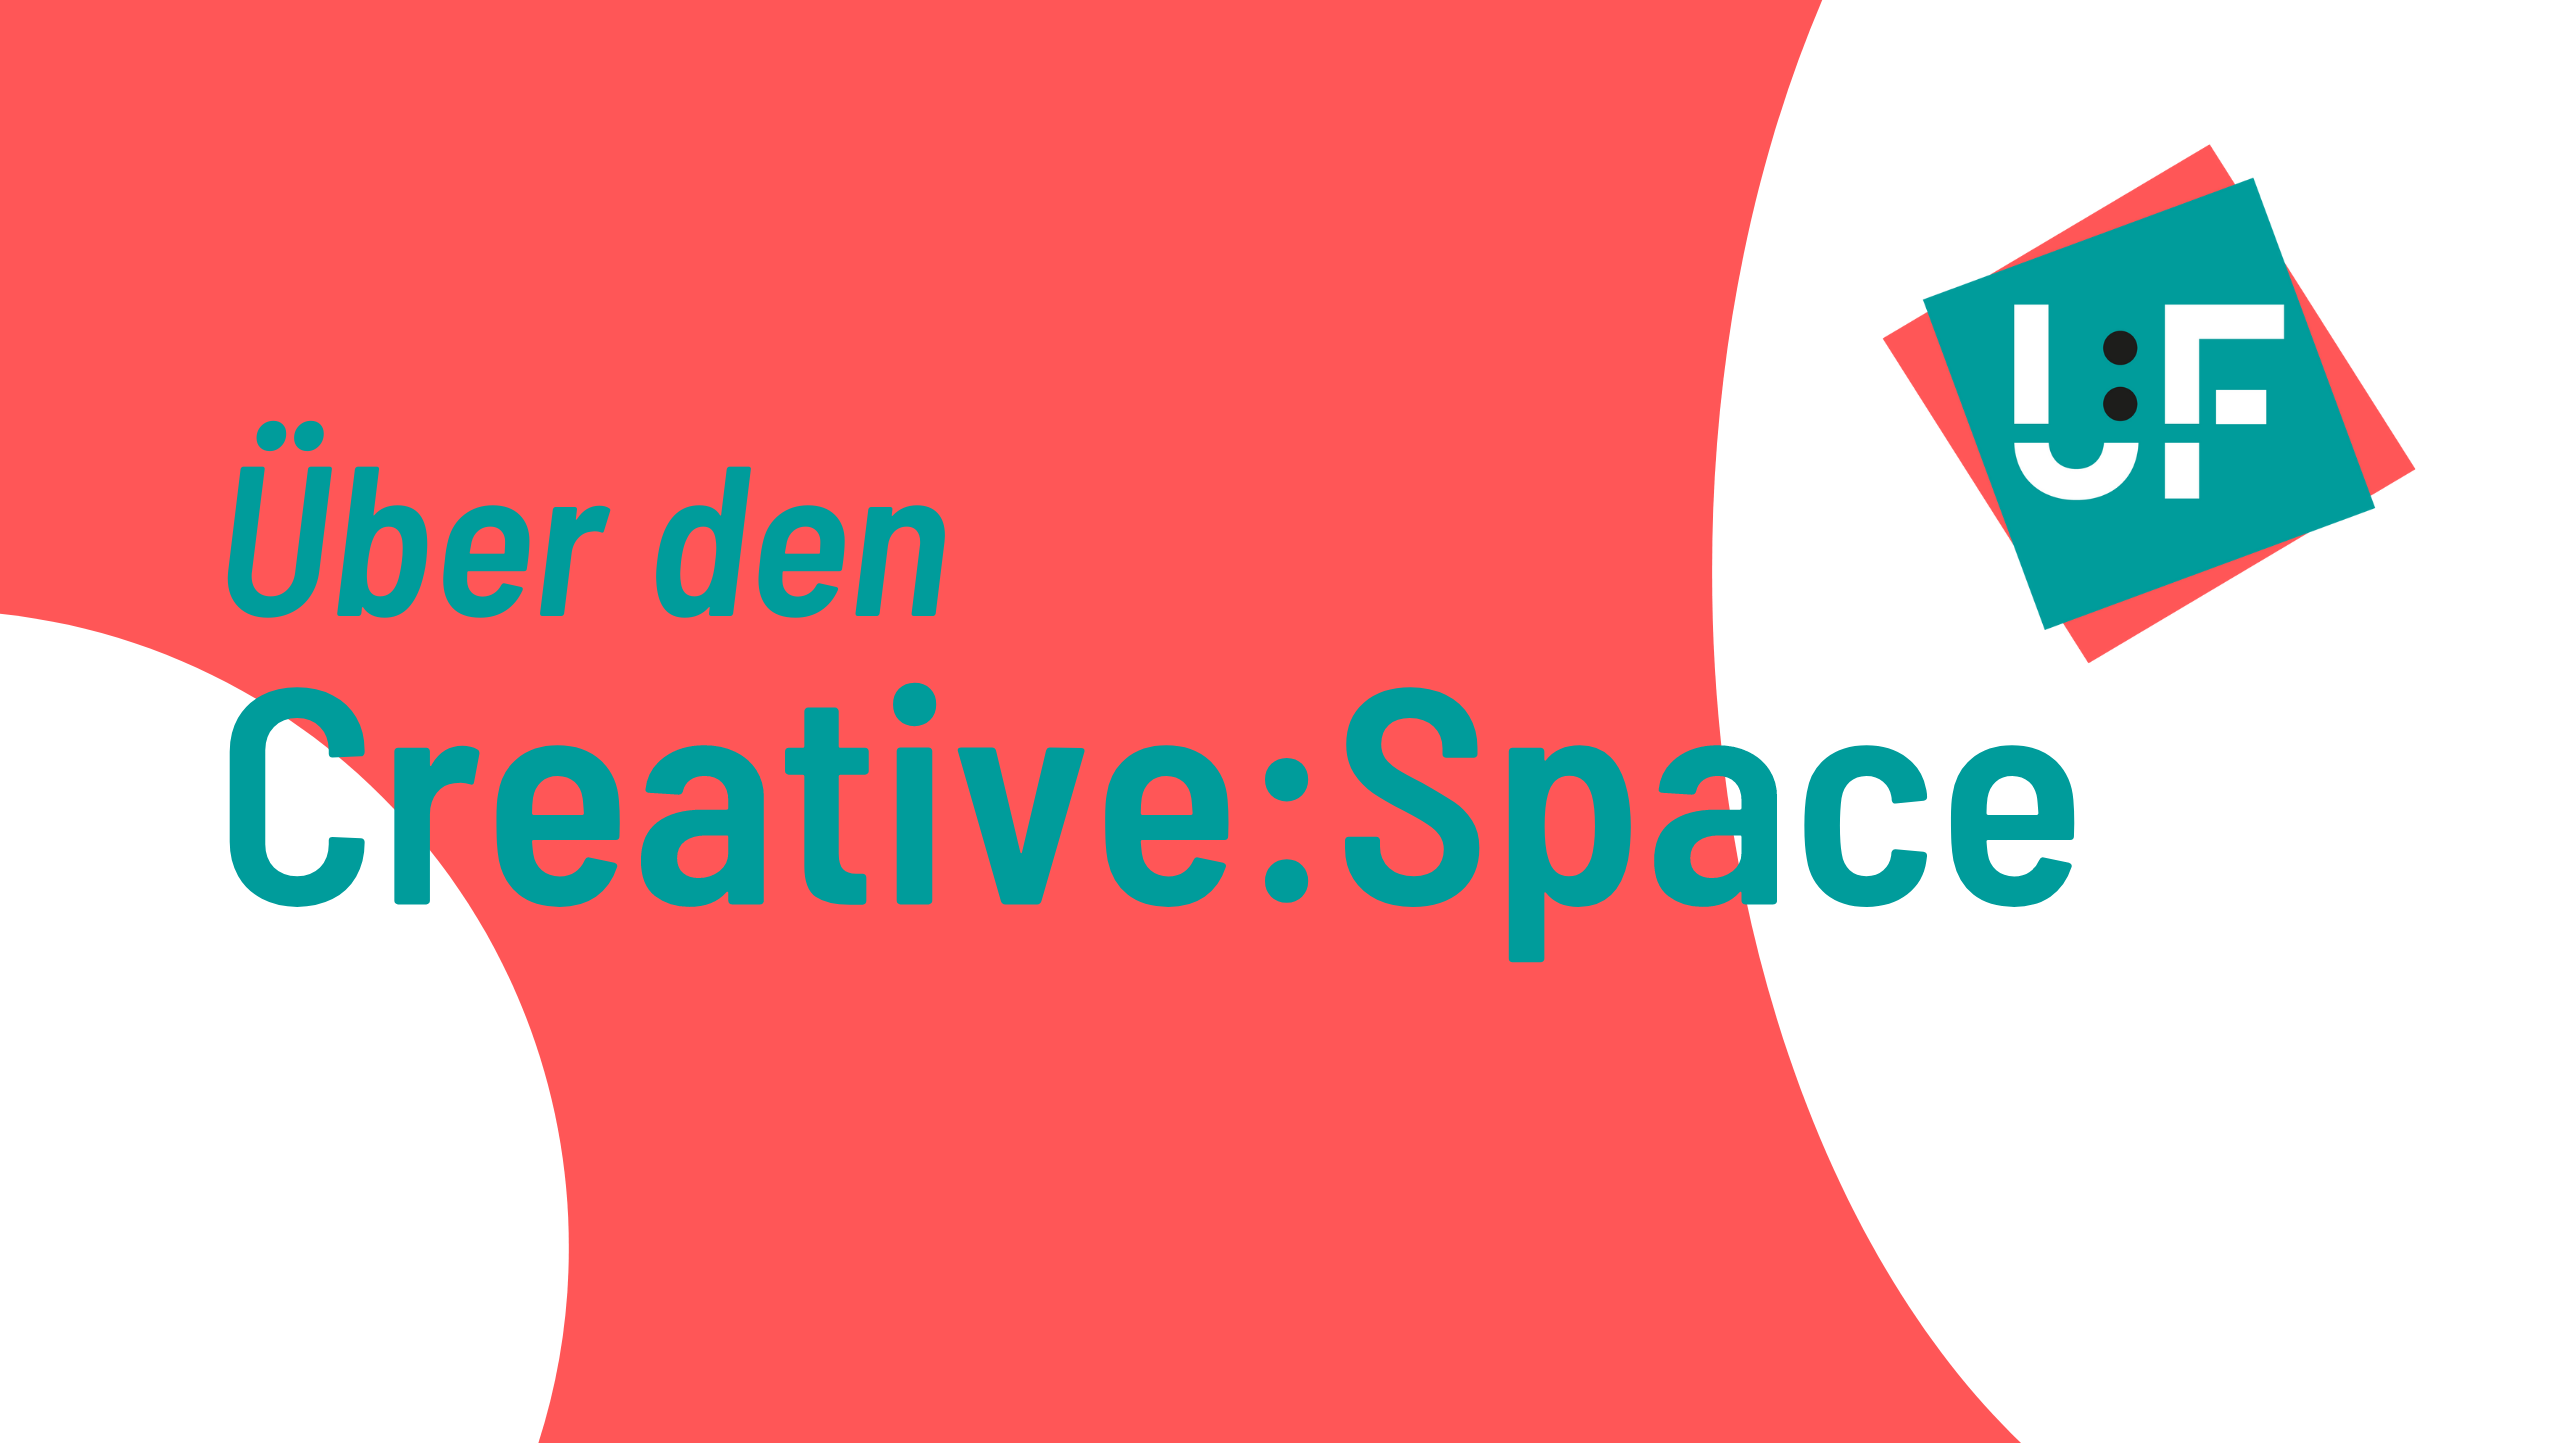 Über den Creative:Space